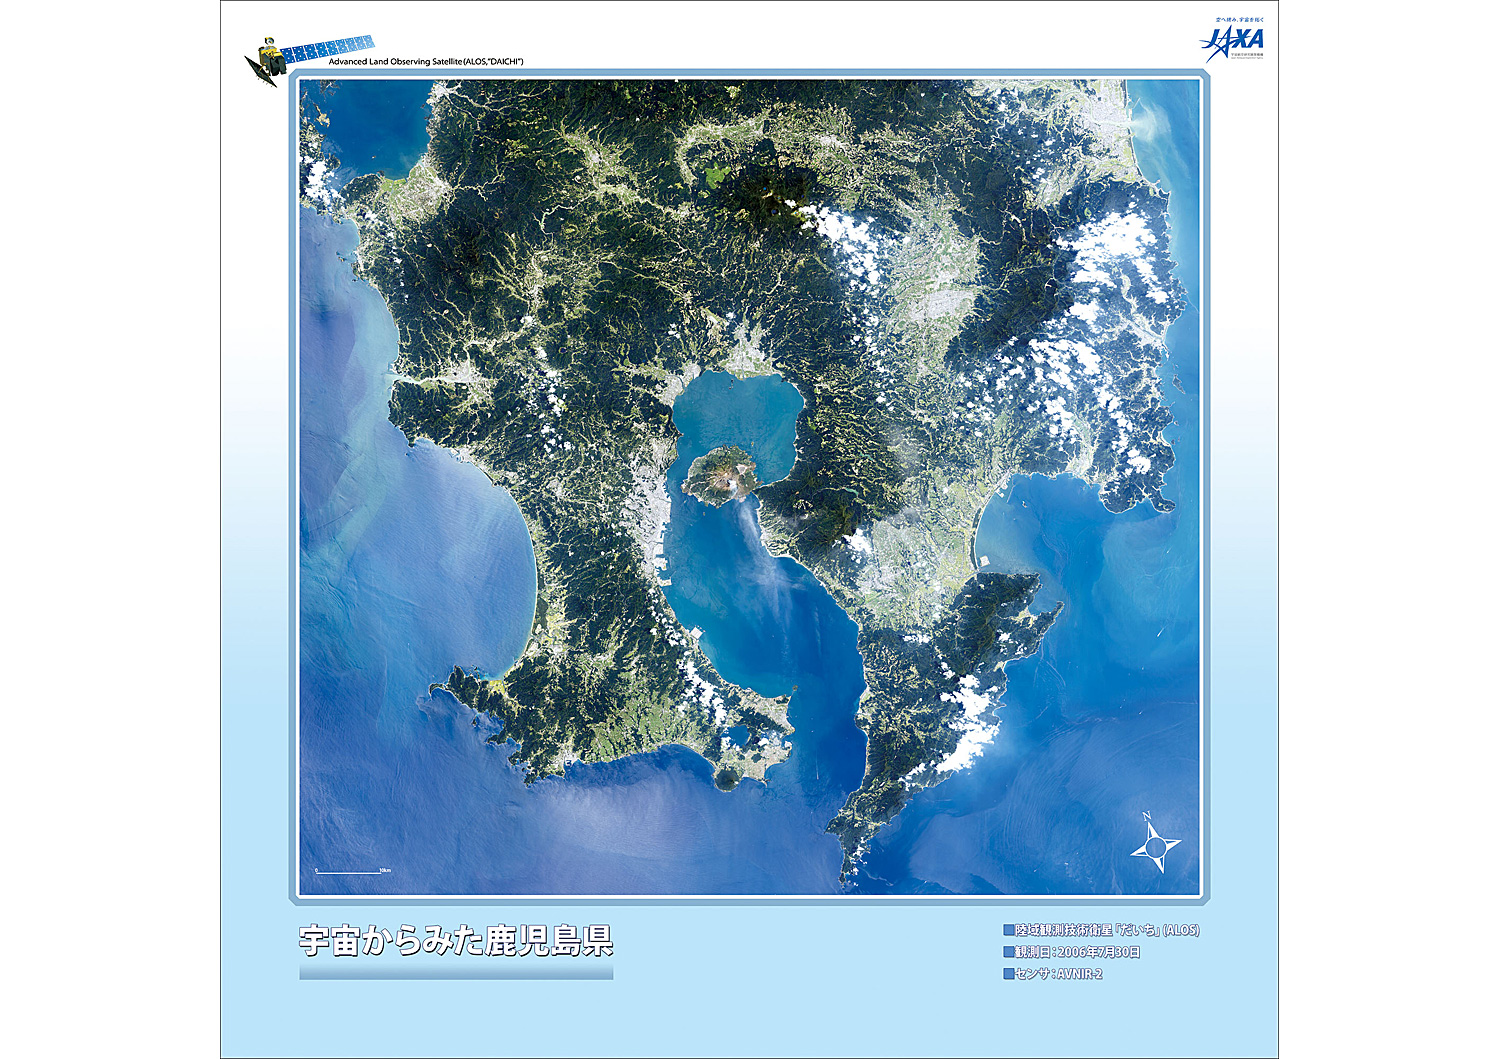 だいちから見た日本の都市 鹿児島 :衛星画像（ポスター仕上げ）